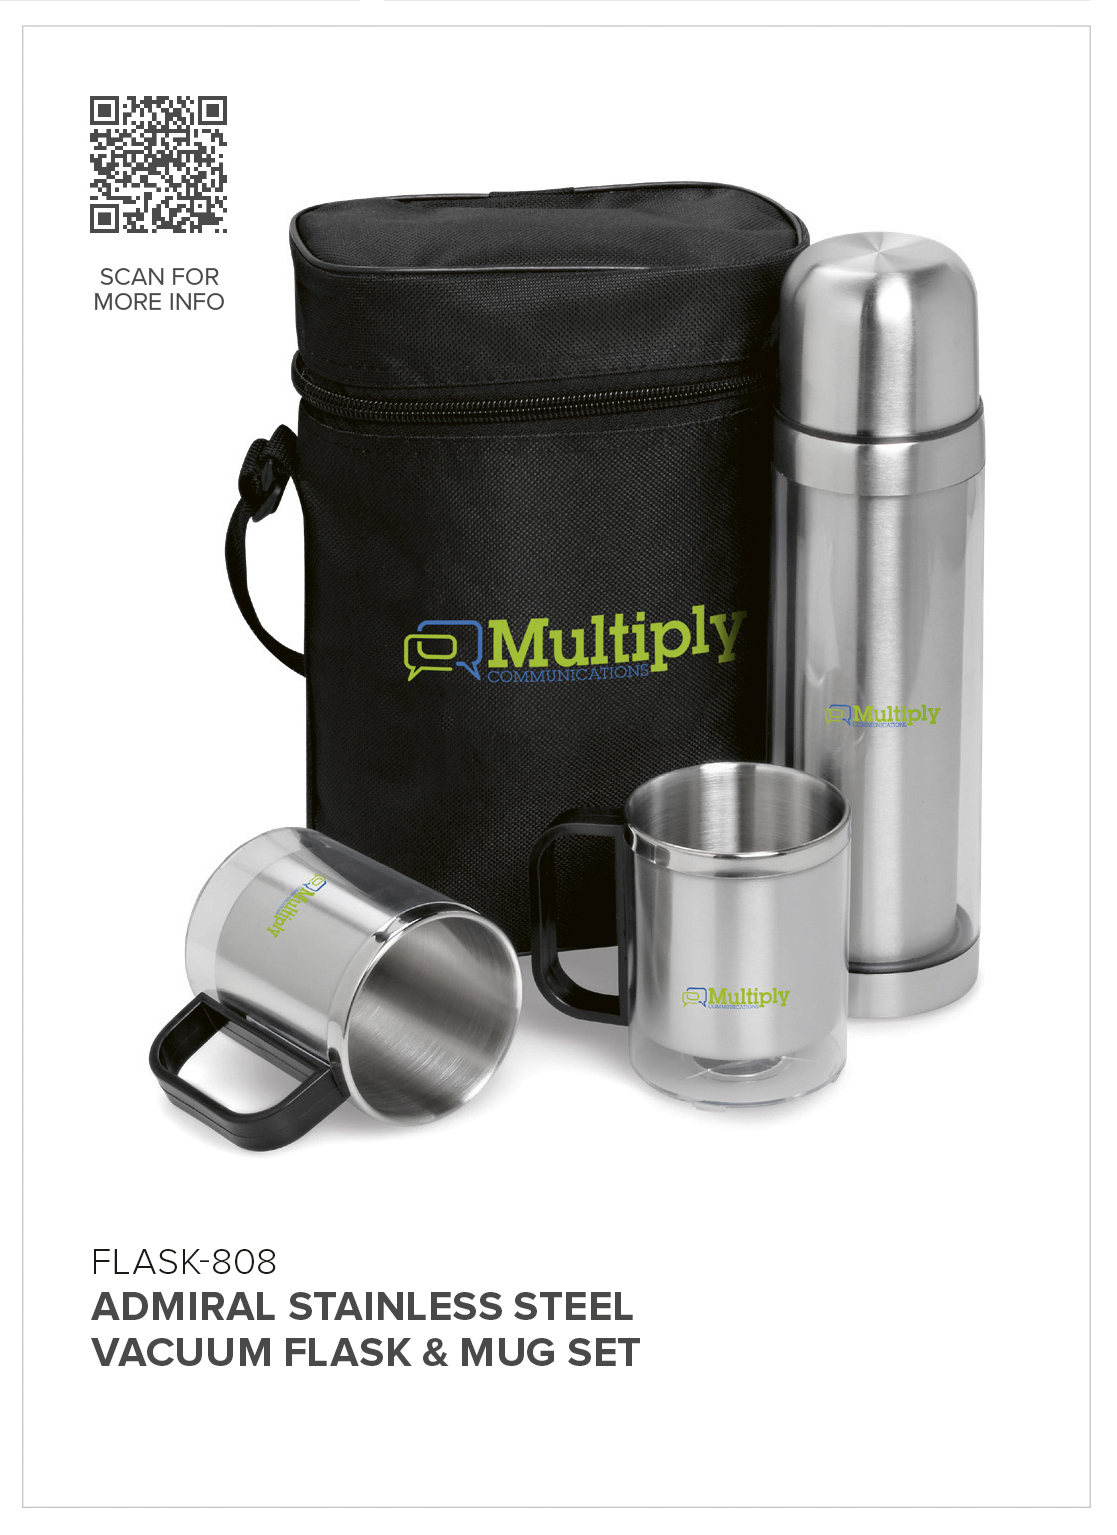 Admiral Stainless Steel Vacuum Flask & Mug Set